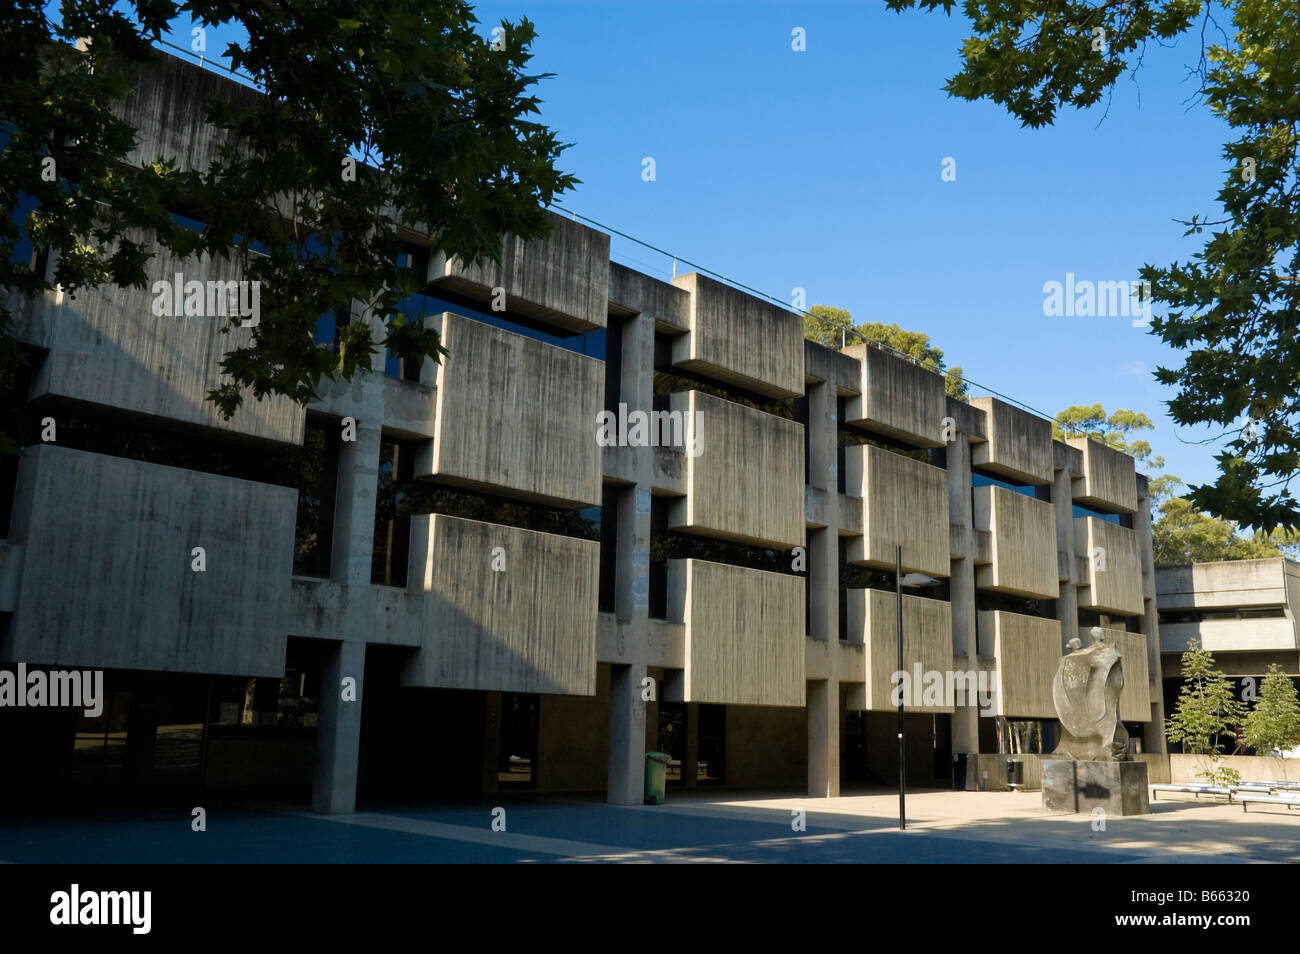 Arquitectura Brutalist en Macquarie University, una universidad moderna en los suburbios del noroeste de Sydney, Australia. Modernismo; brutalismo Foto de stock